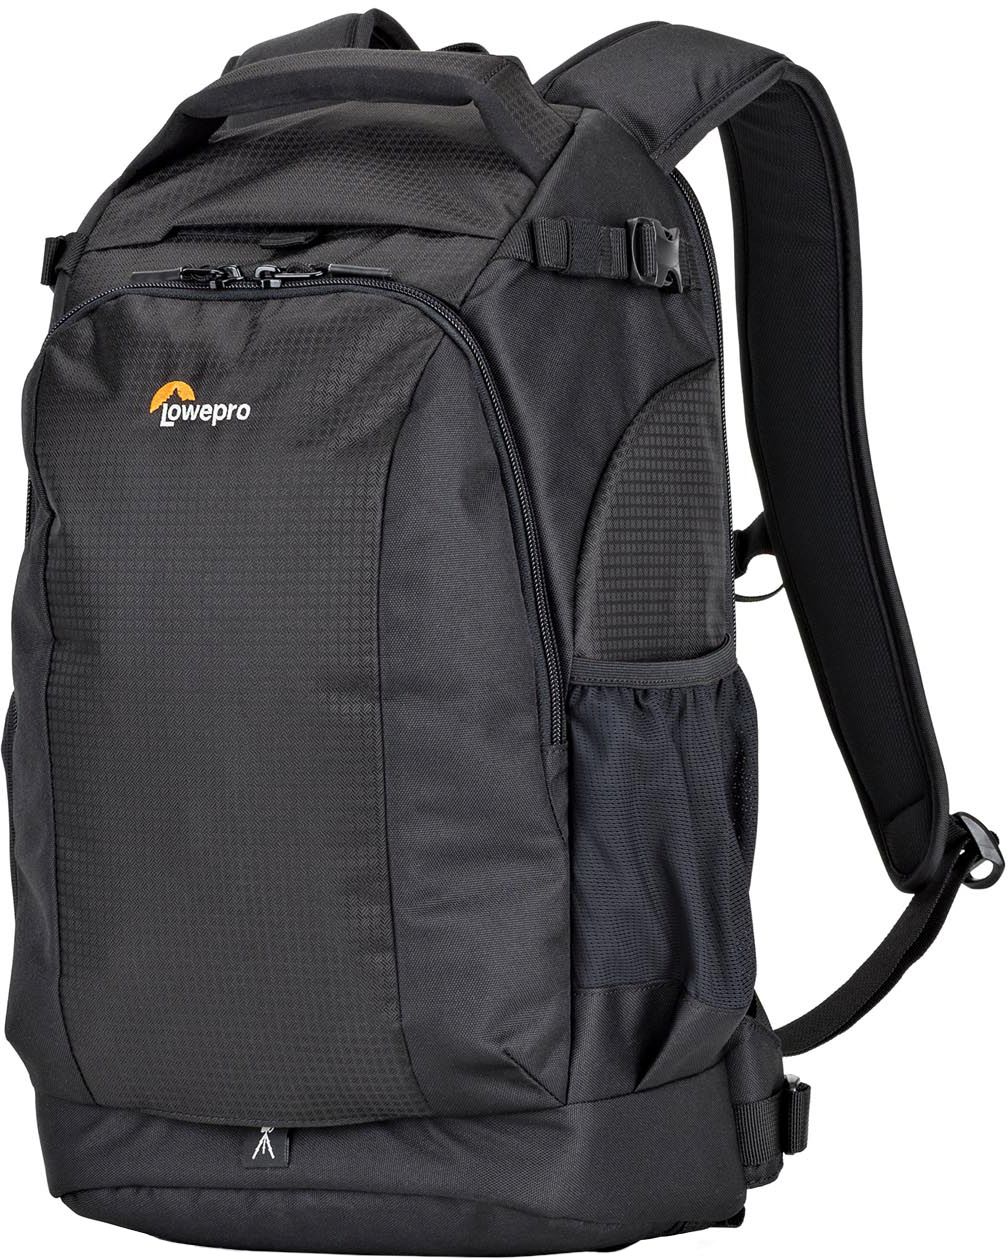 Lowepro Flipside 300 AW II Camera Backpack Black  - Best Buy